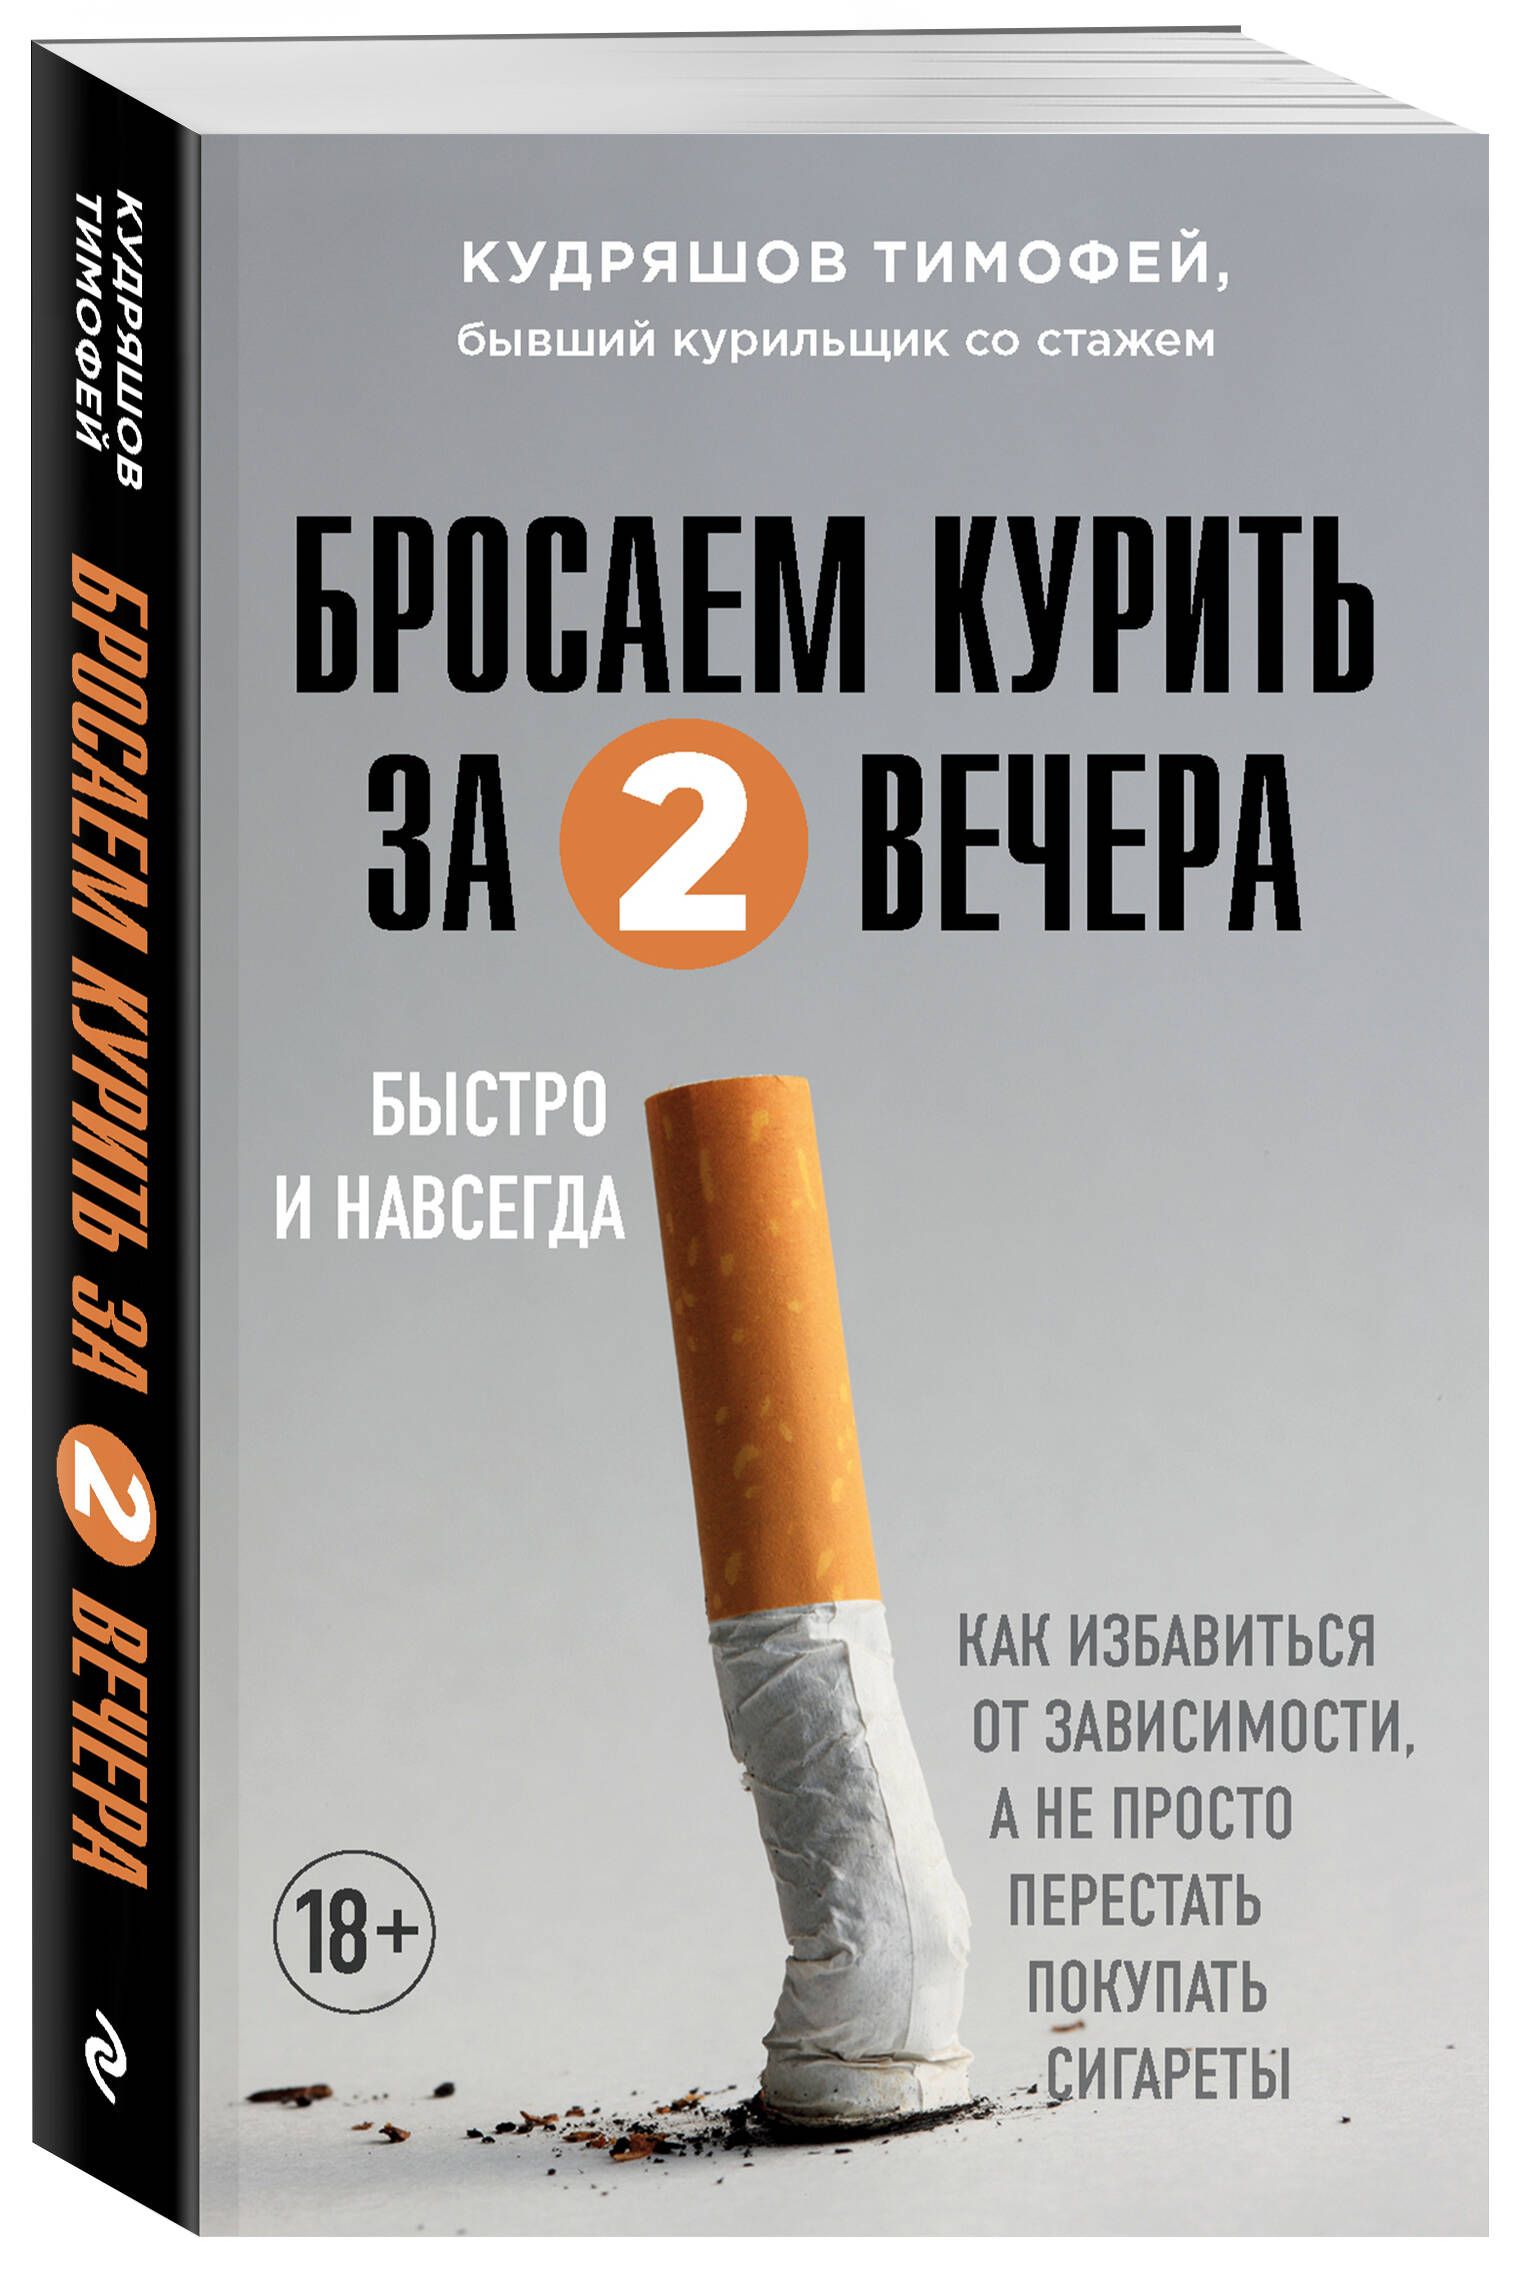 Бросаем курить за 2 вечера. Бросить курить. Сигареты. Бросаем курить за два вечера. Как бросить курить книга.